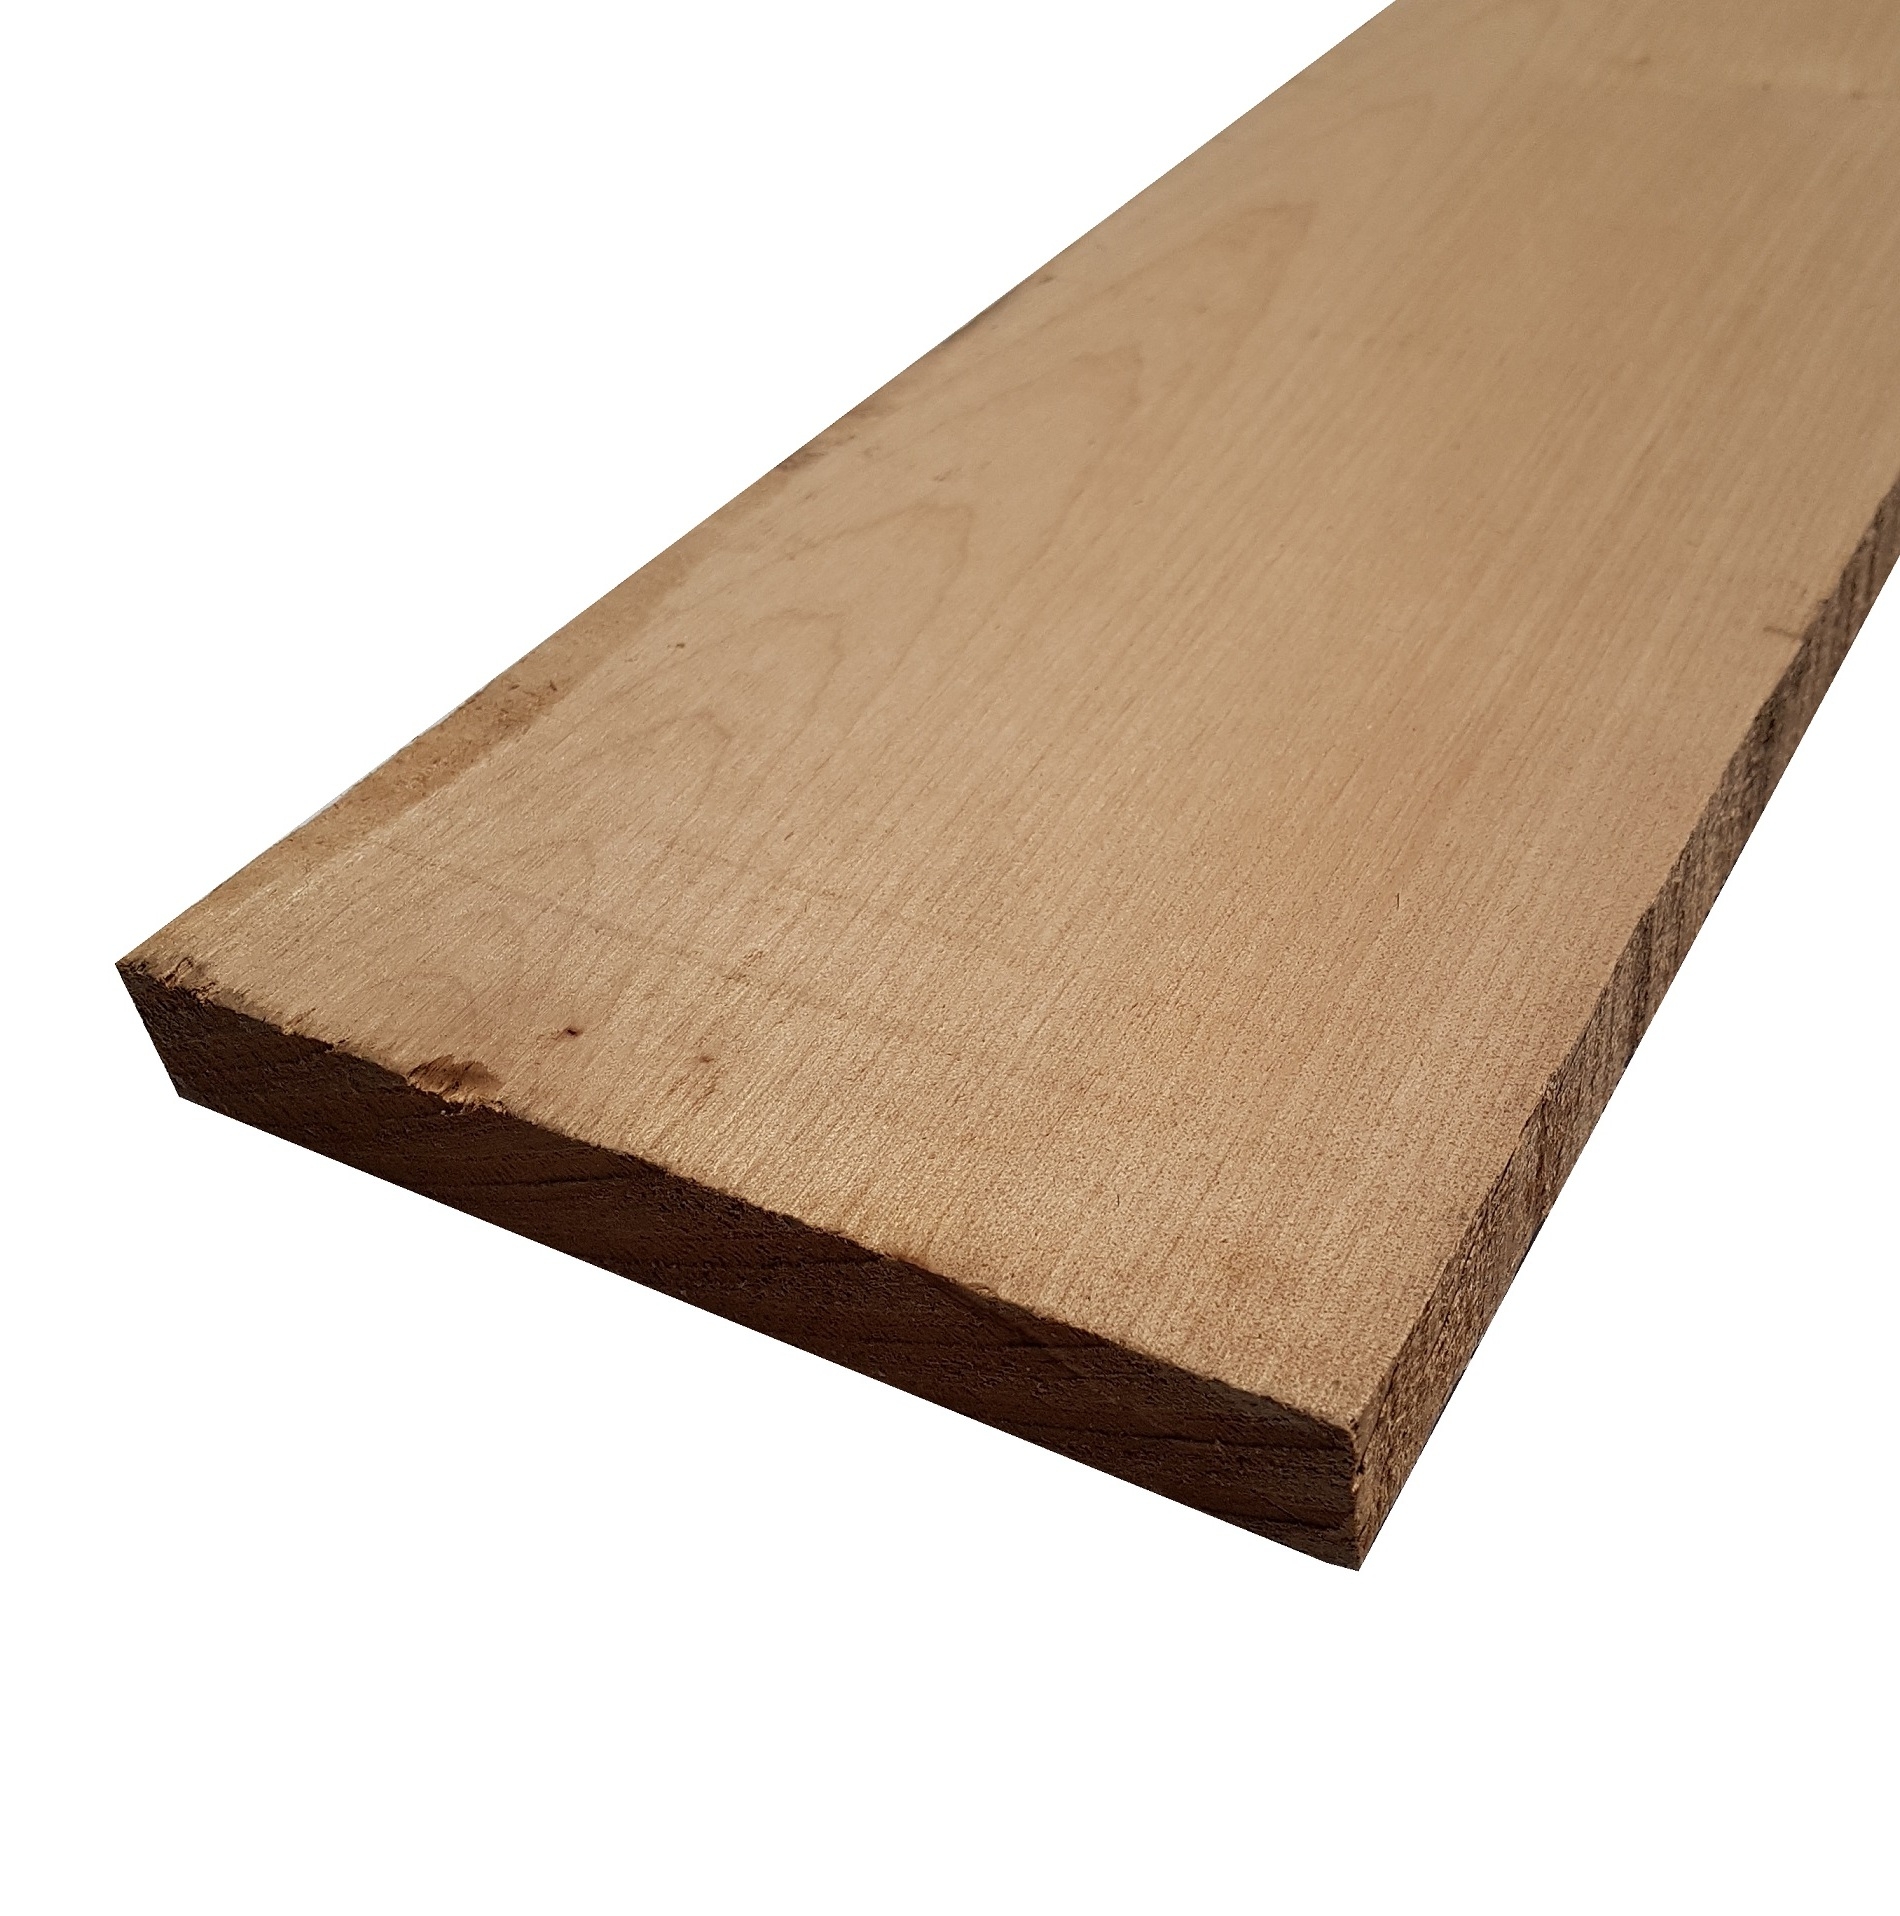 Tavola legno di Acero Pacific Coast Maple Calibrato refilato grezzo mm 24 x 180 x 2100